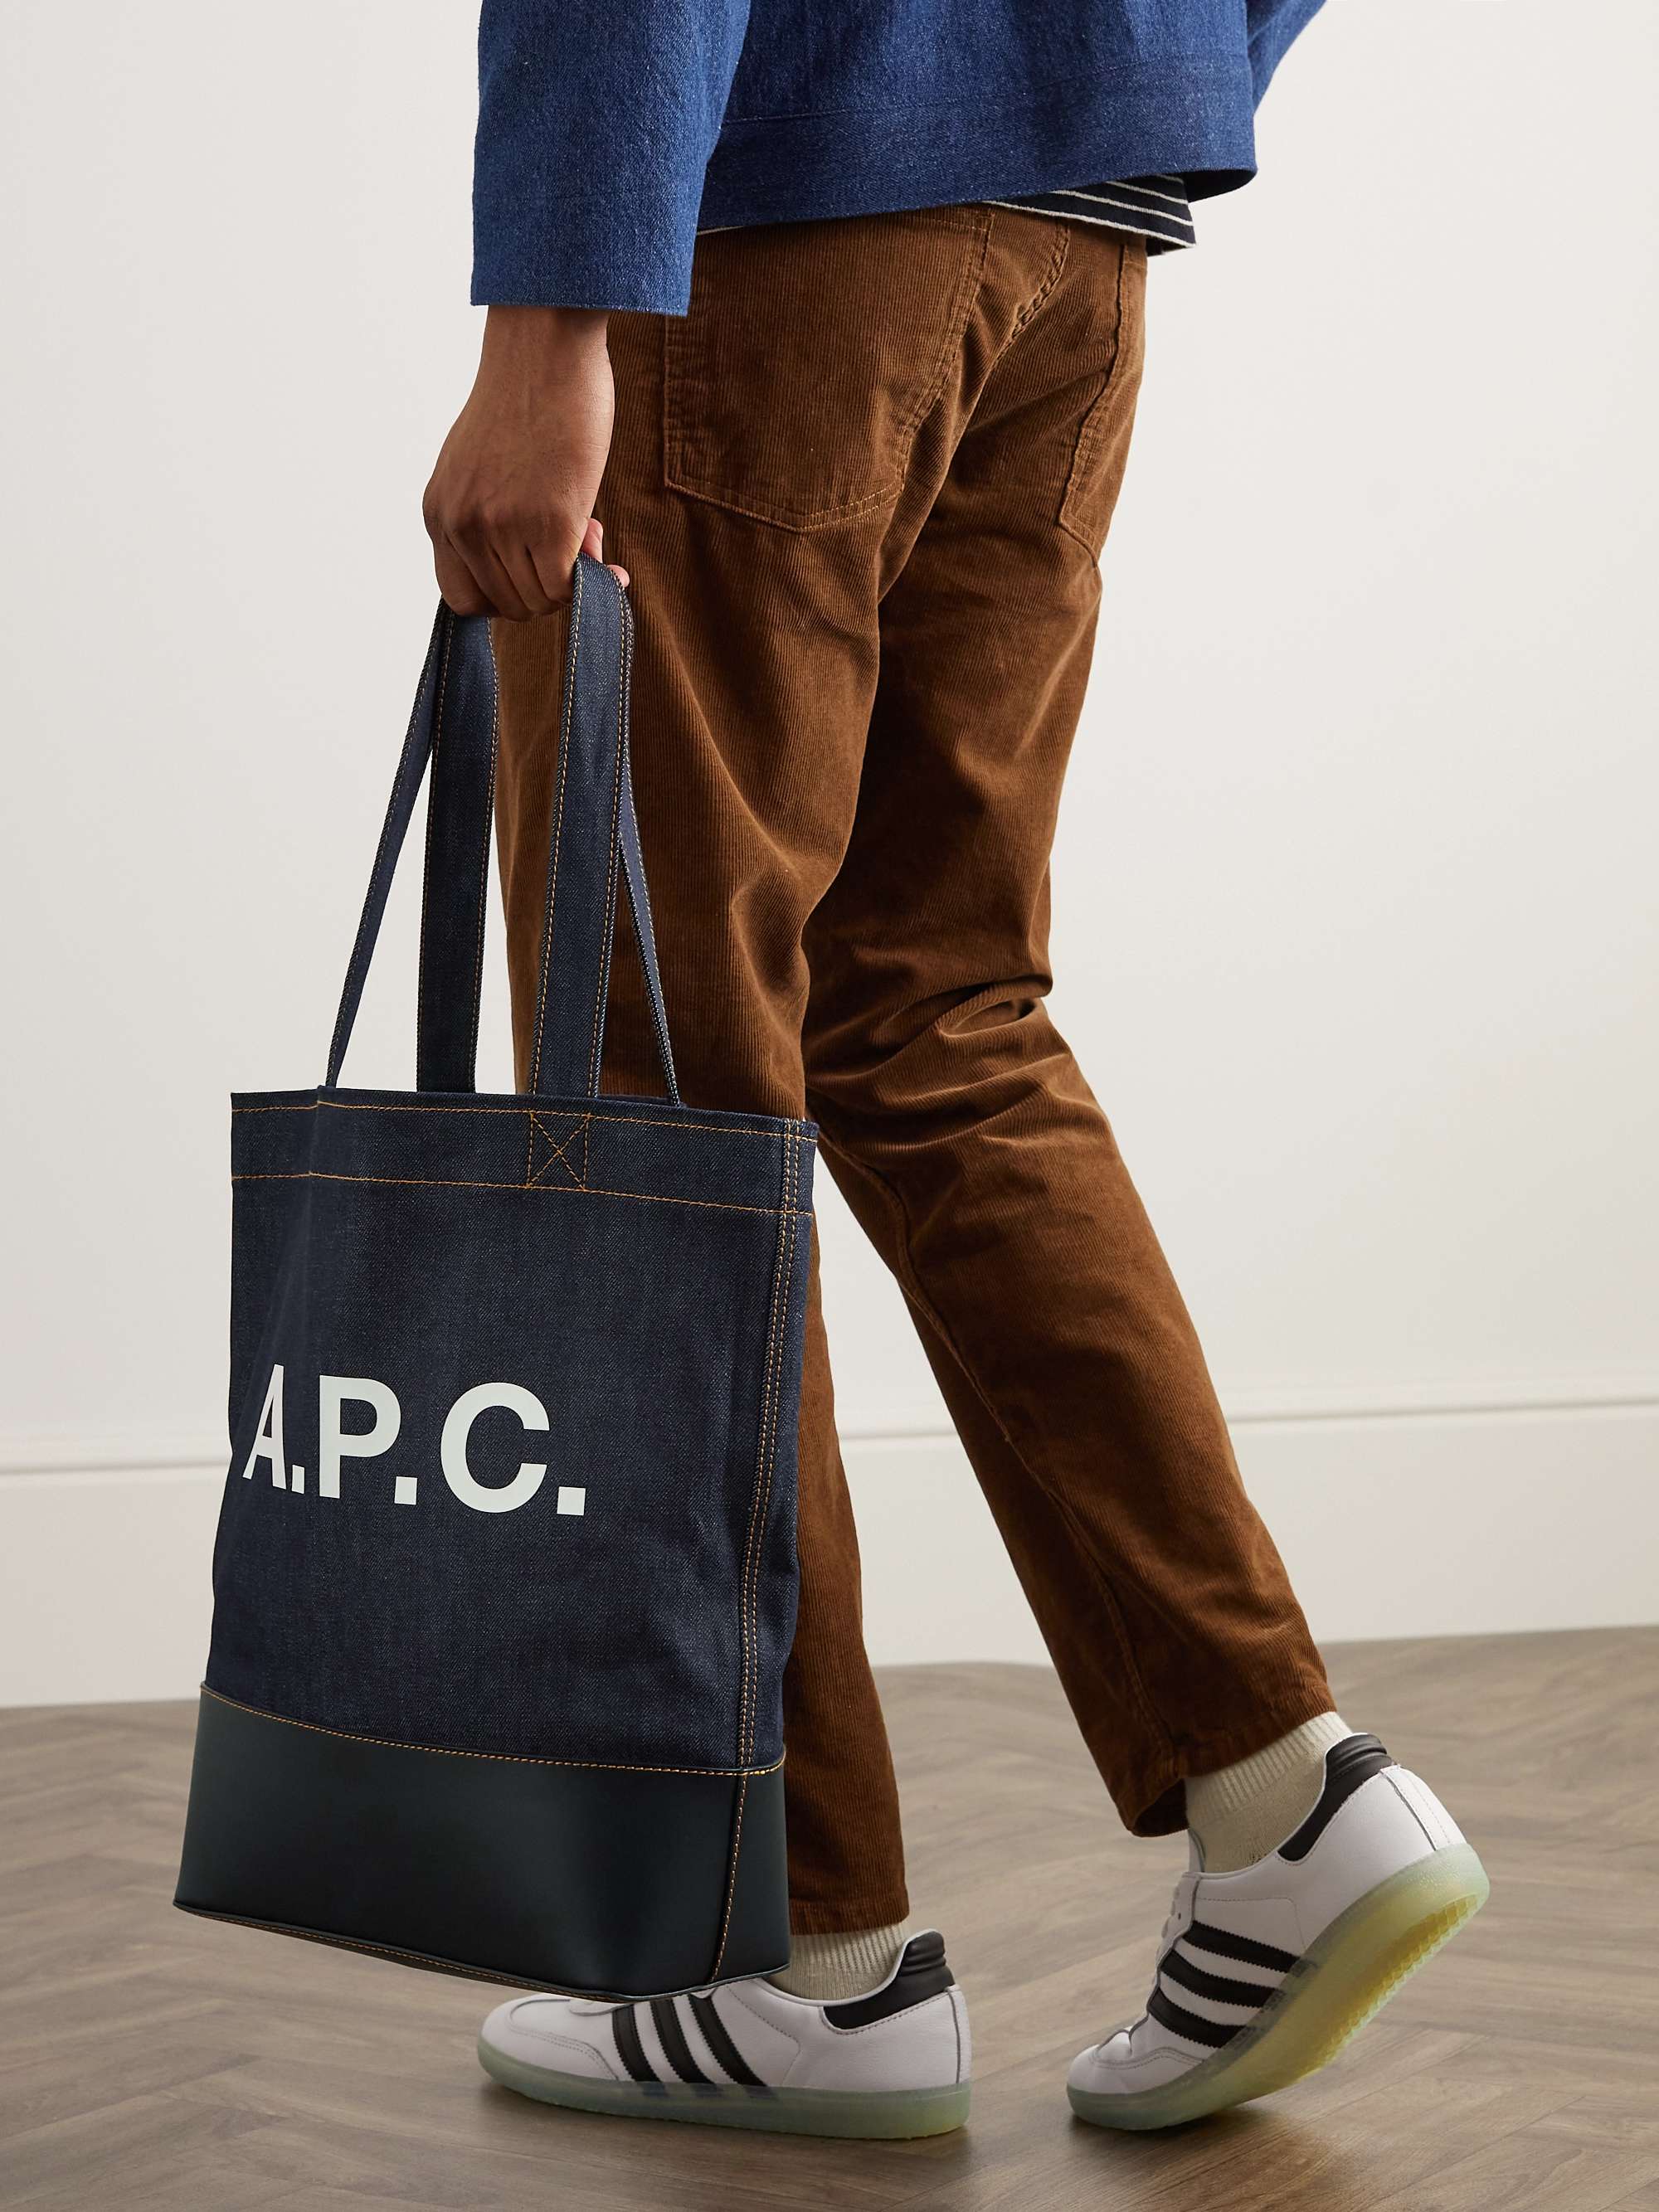 Apc Axel Shopping Bag | escapeauthority.com